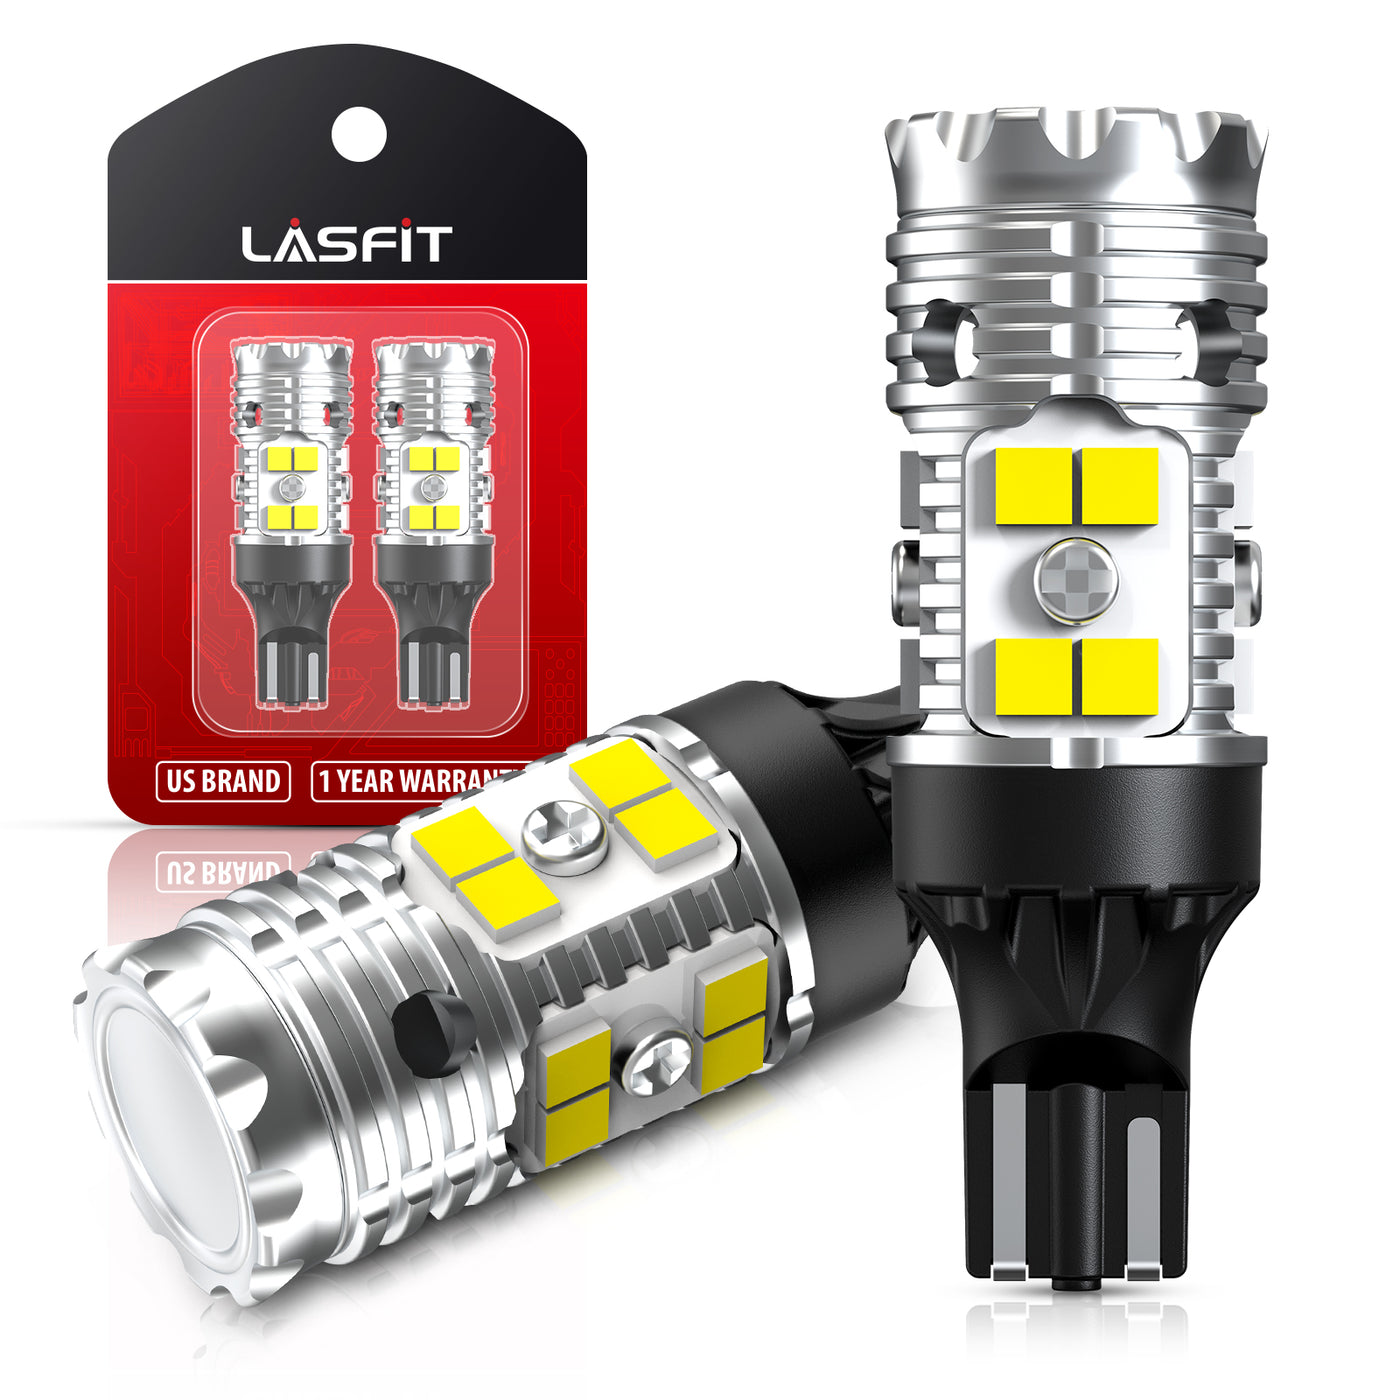 H4 LED lampen (set 2 stuks) CANbus geschikt HB2 / 9003 / 6000k